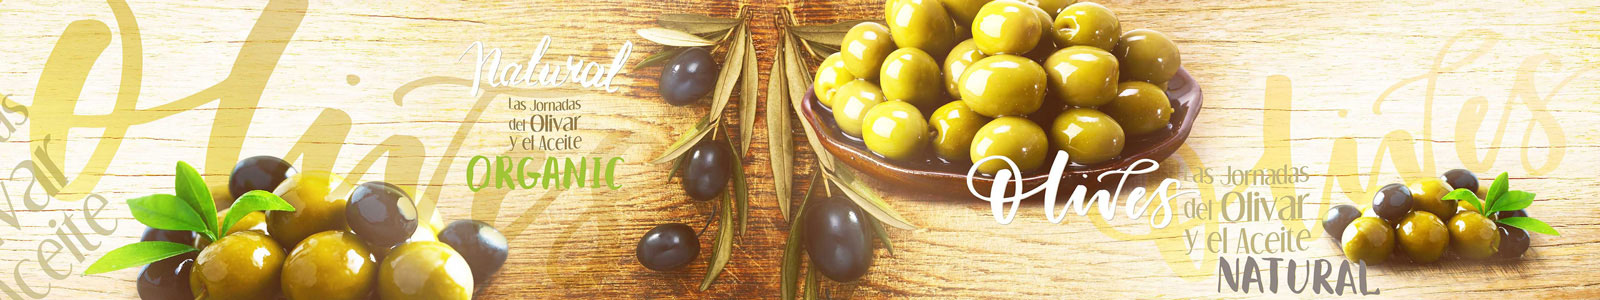 №5984 - Оливки, маслины на фоне деревянной текстуры и надписей